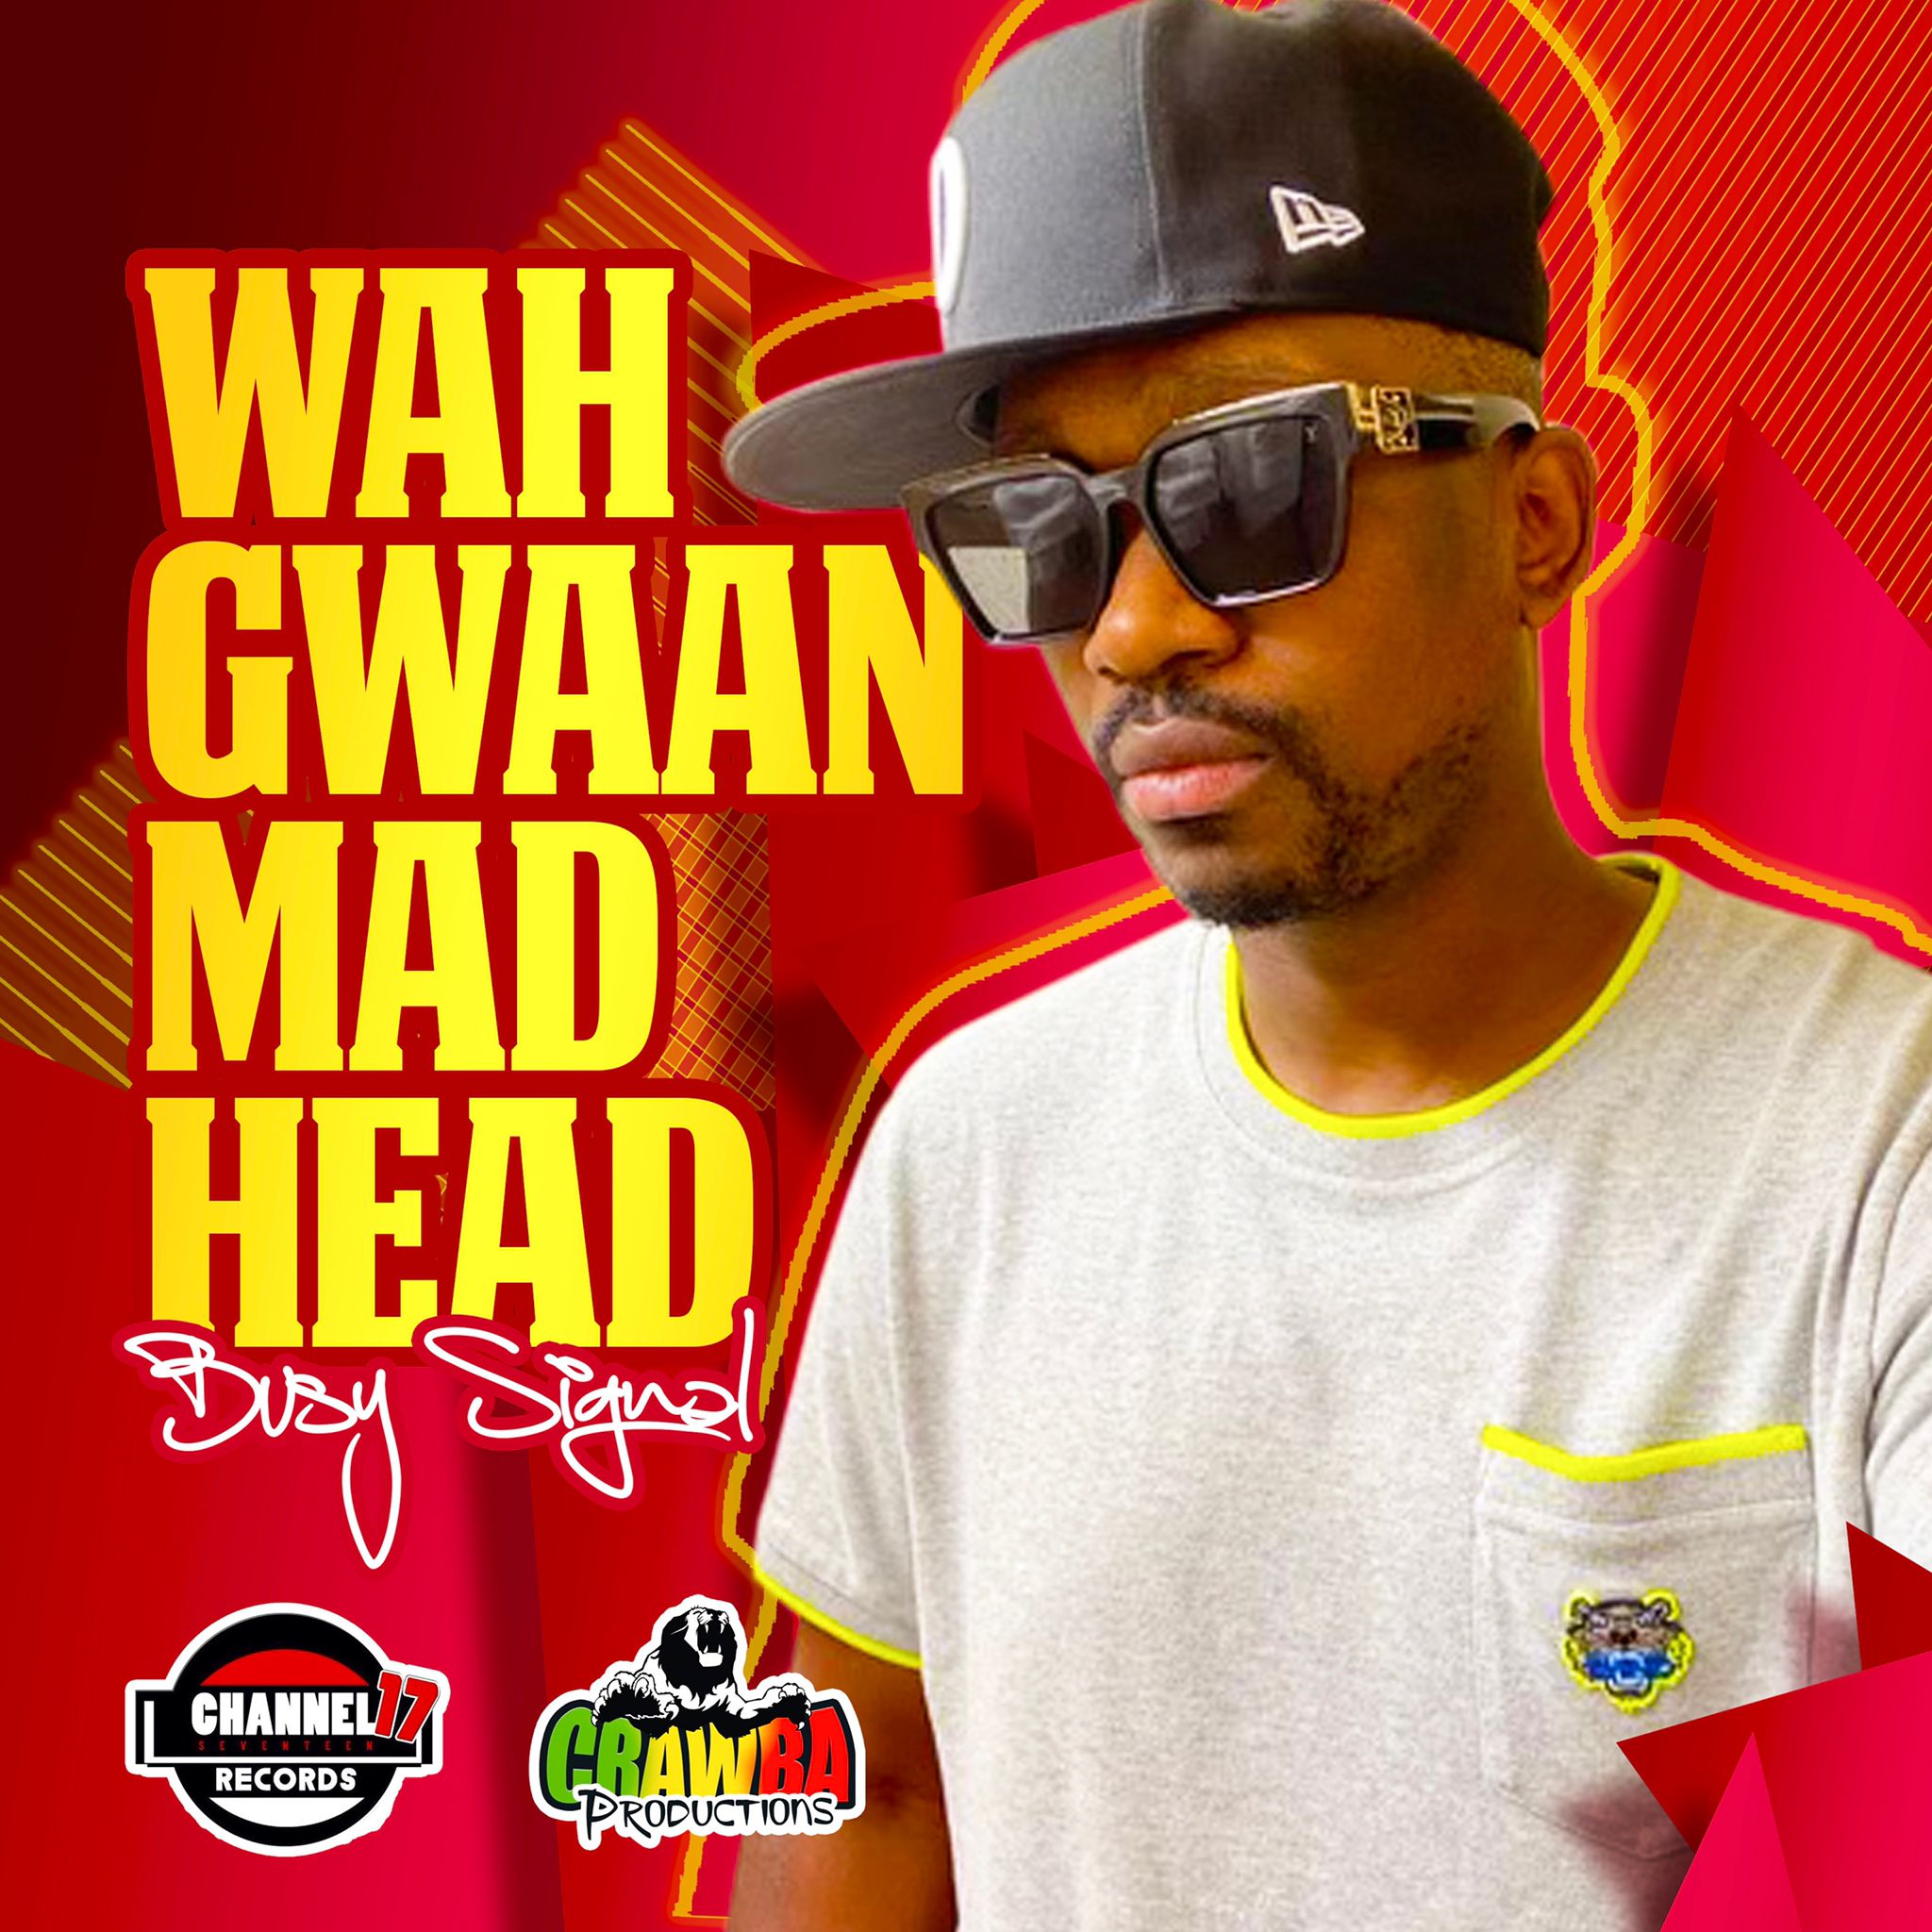 El artista jamaiquino Busy Signal se encuentra de estreno con su nuevo hit “Wa Gwan Madhead”.